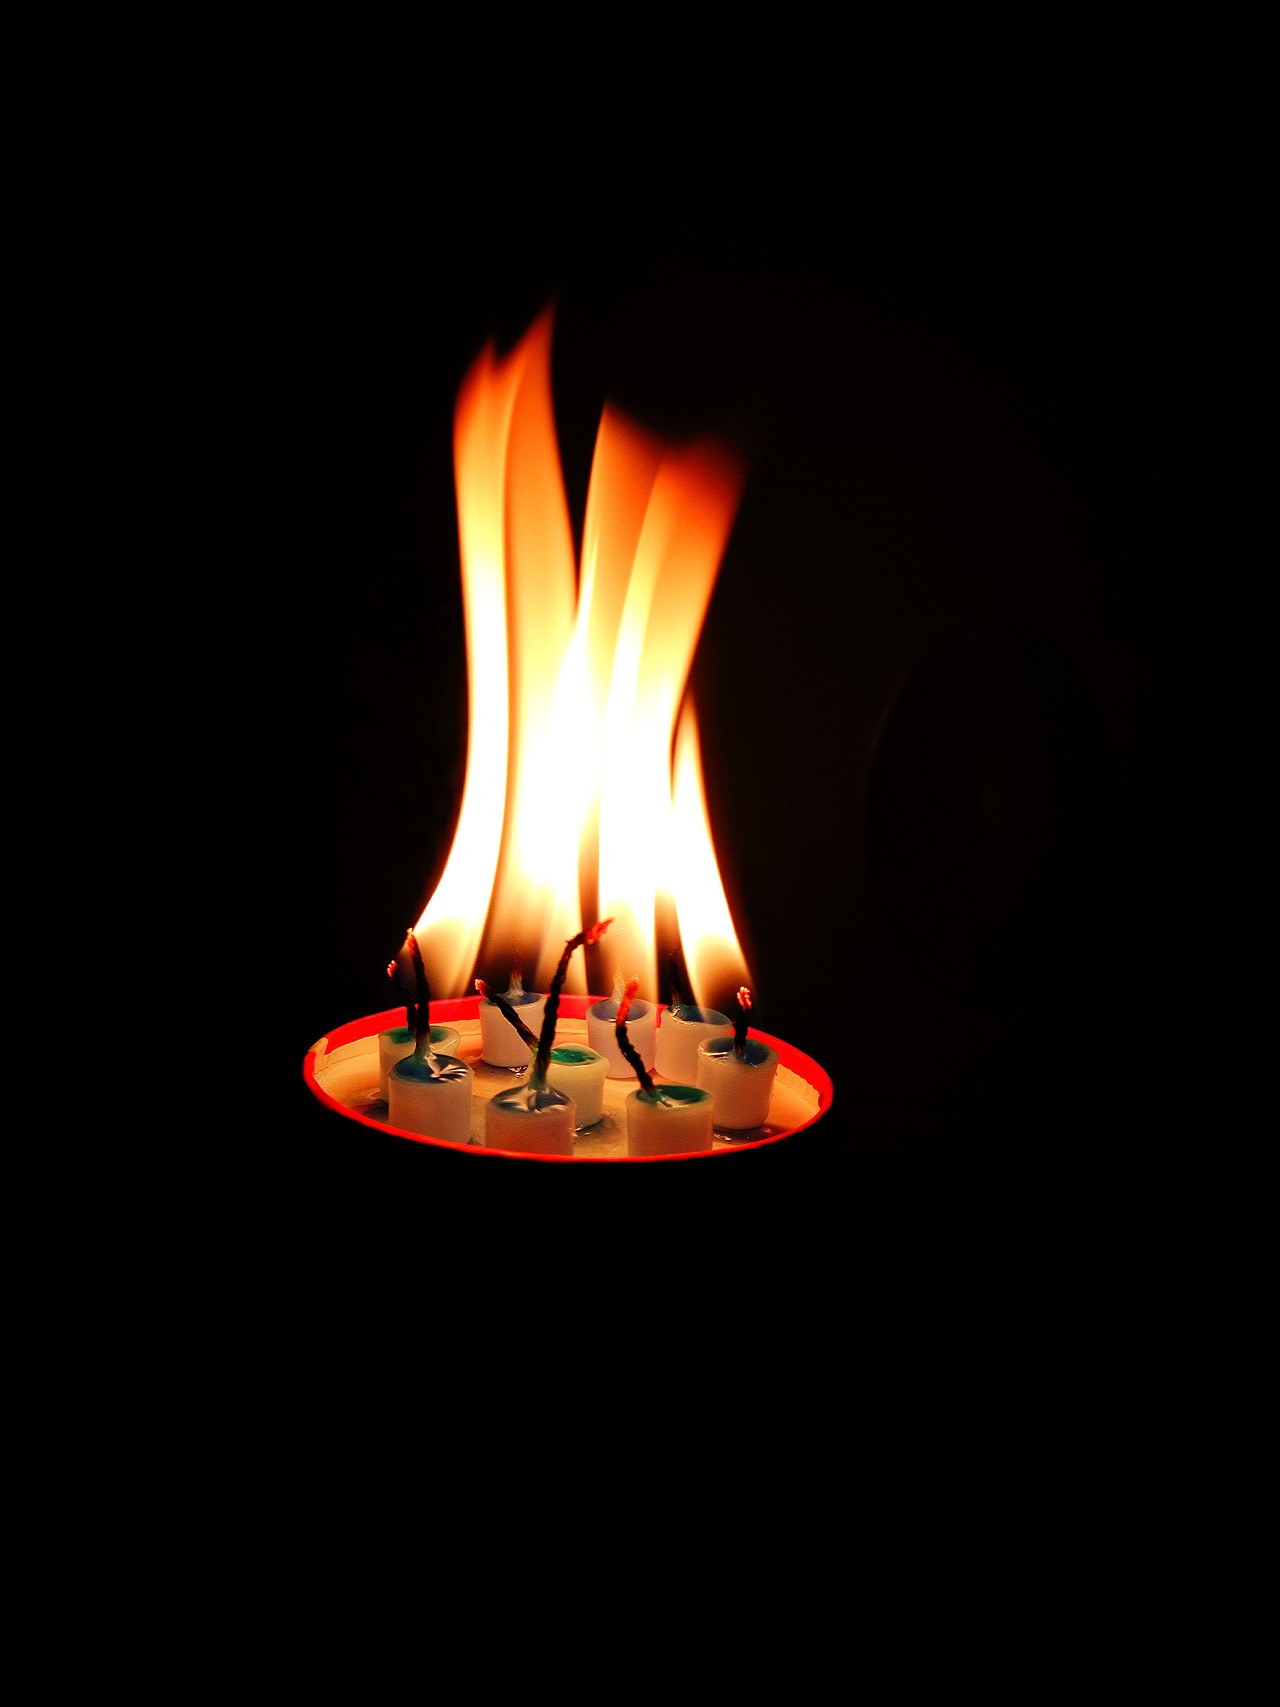 图片素材 : 大气层, 火焰, 黄色, 灯光, 装饰, 热, 心情, 烛光, 燃烧的蜡烛, 无焰蜡烛 1944x2592 - - 635301 ...